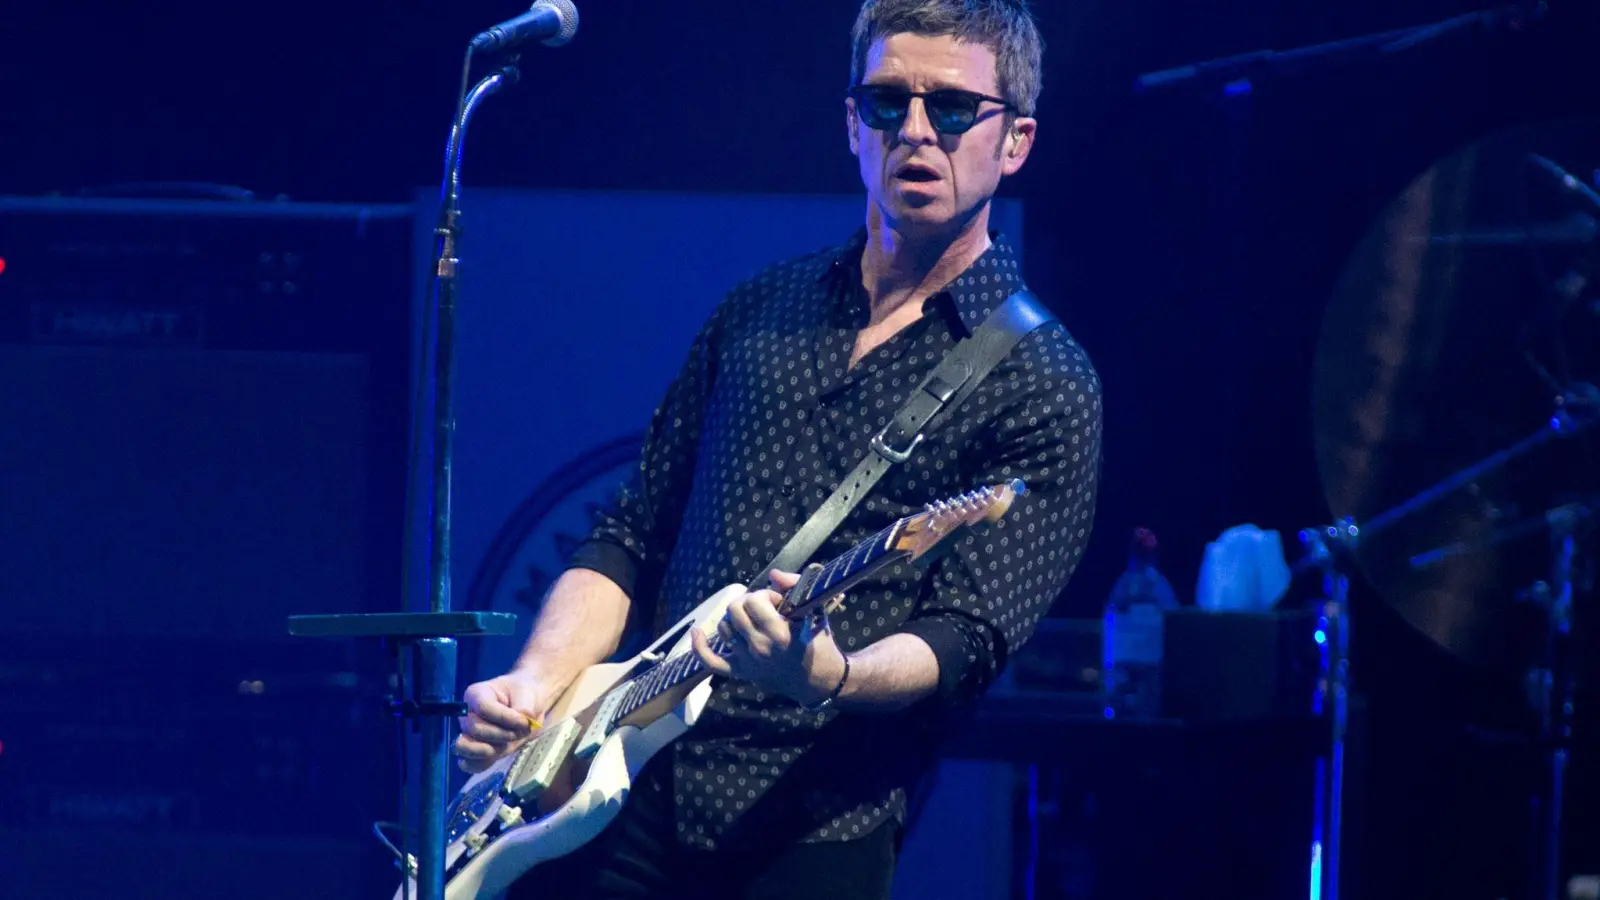 Noel Gallagher war der Kopf der Britpop-Band Oasis und gilt als begnadeter Songschreiber. (Foto: Owen Sweeney/Invision/dpa)